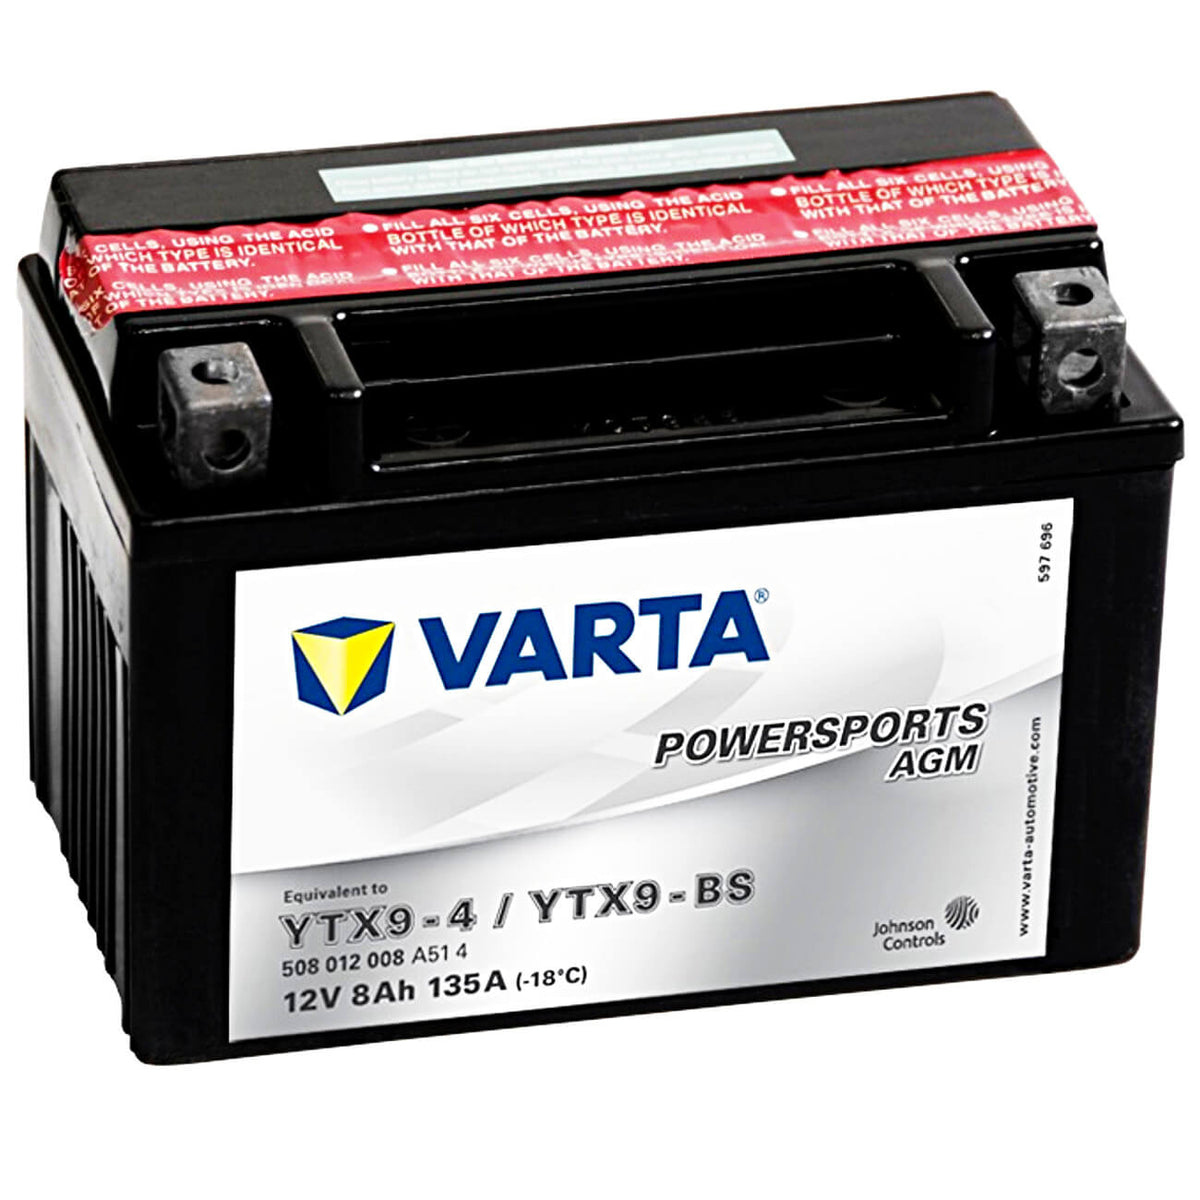 Varta Powersports 50812 AGM 12V 8Ah 135A